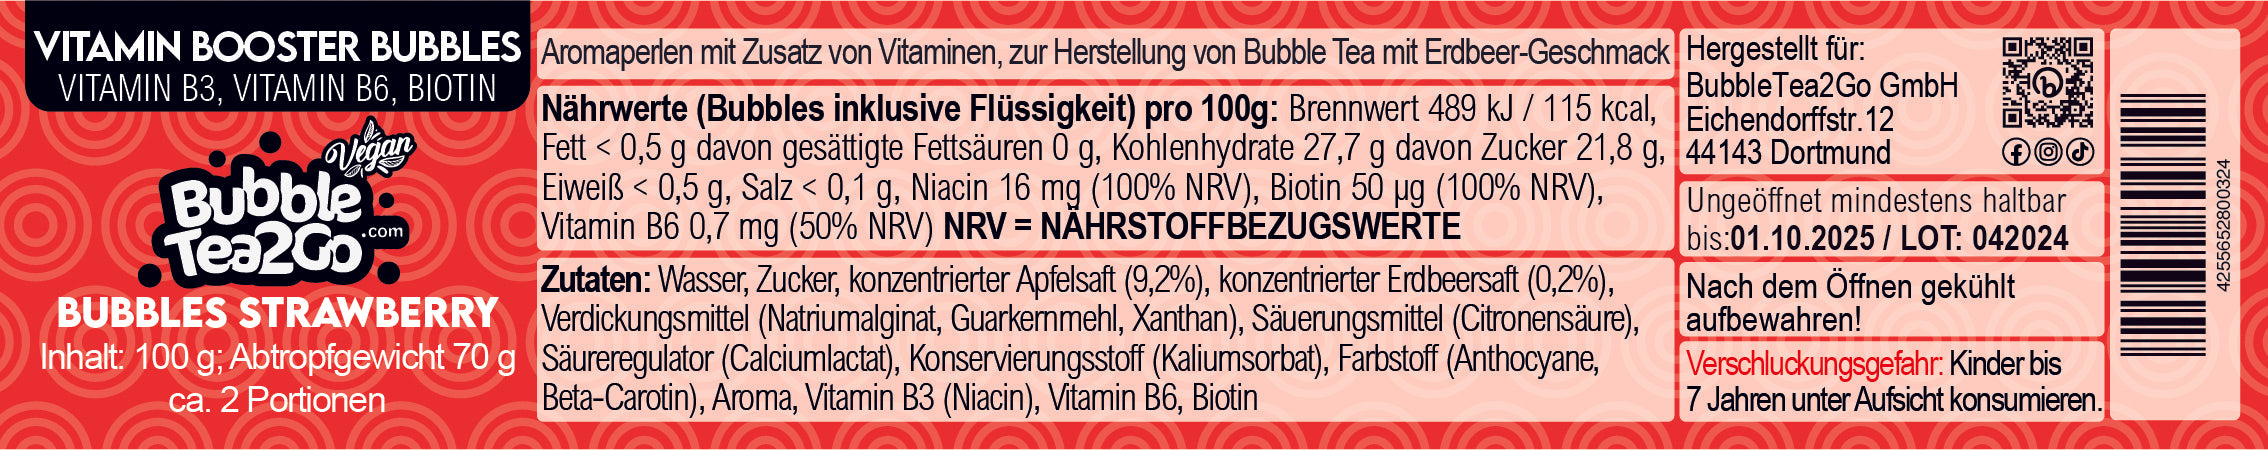 Bubbles - Strawberry 2 Portionen